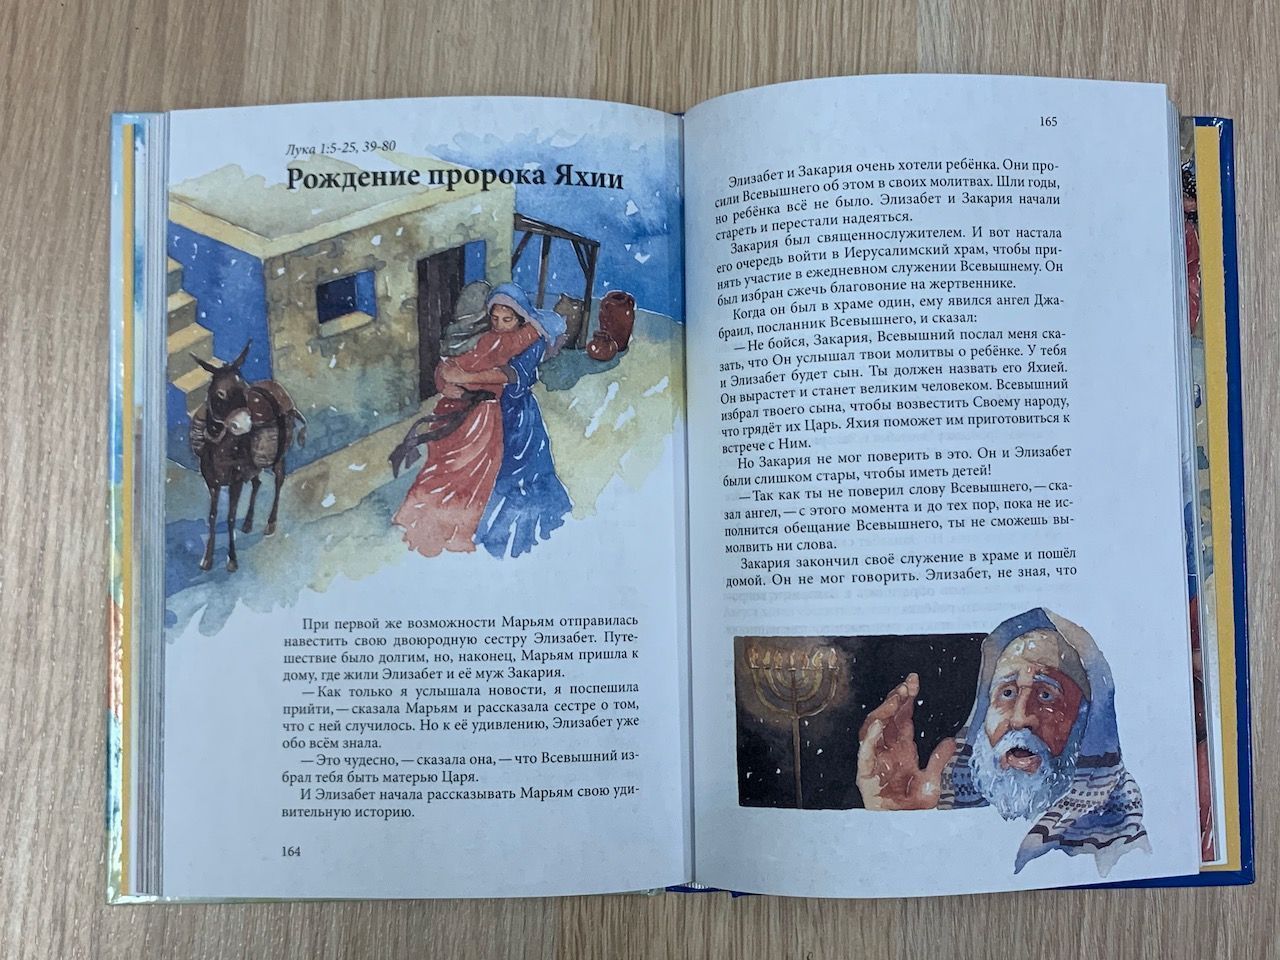 Истории из Священного Писания для всей семьи, цветные иллюстрации, большой формат. Отрывки из Таурата, Книги Пророков и Инджила. Восточный перевод